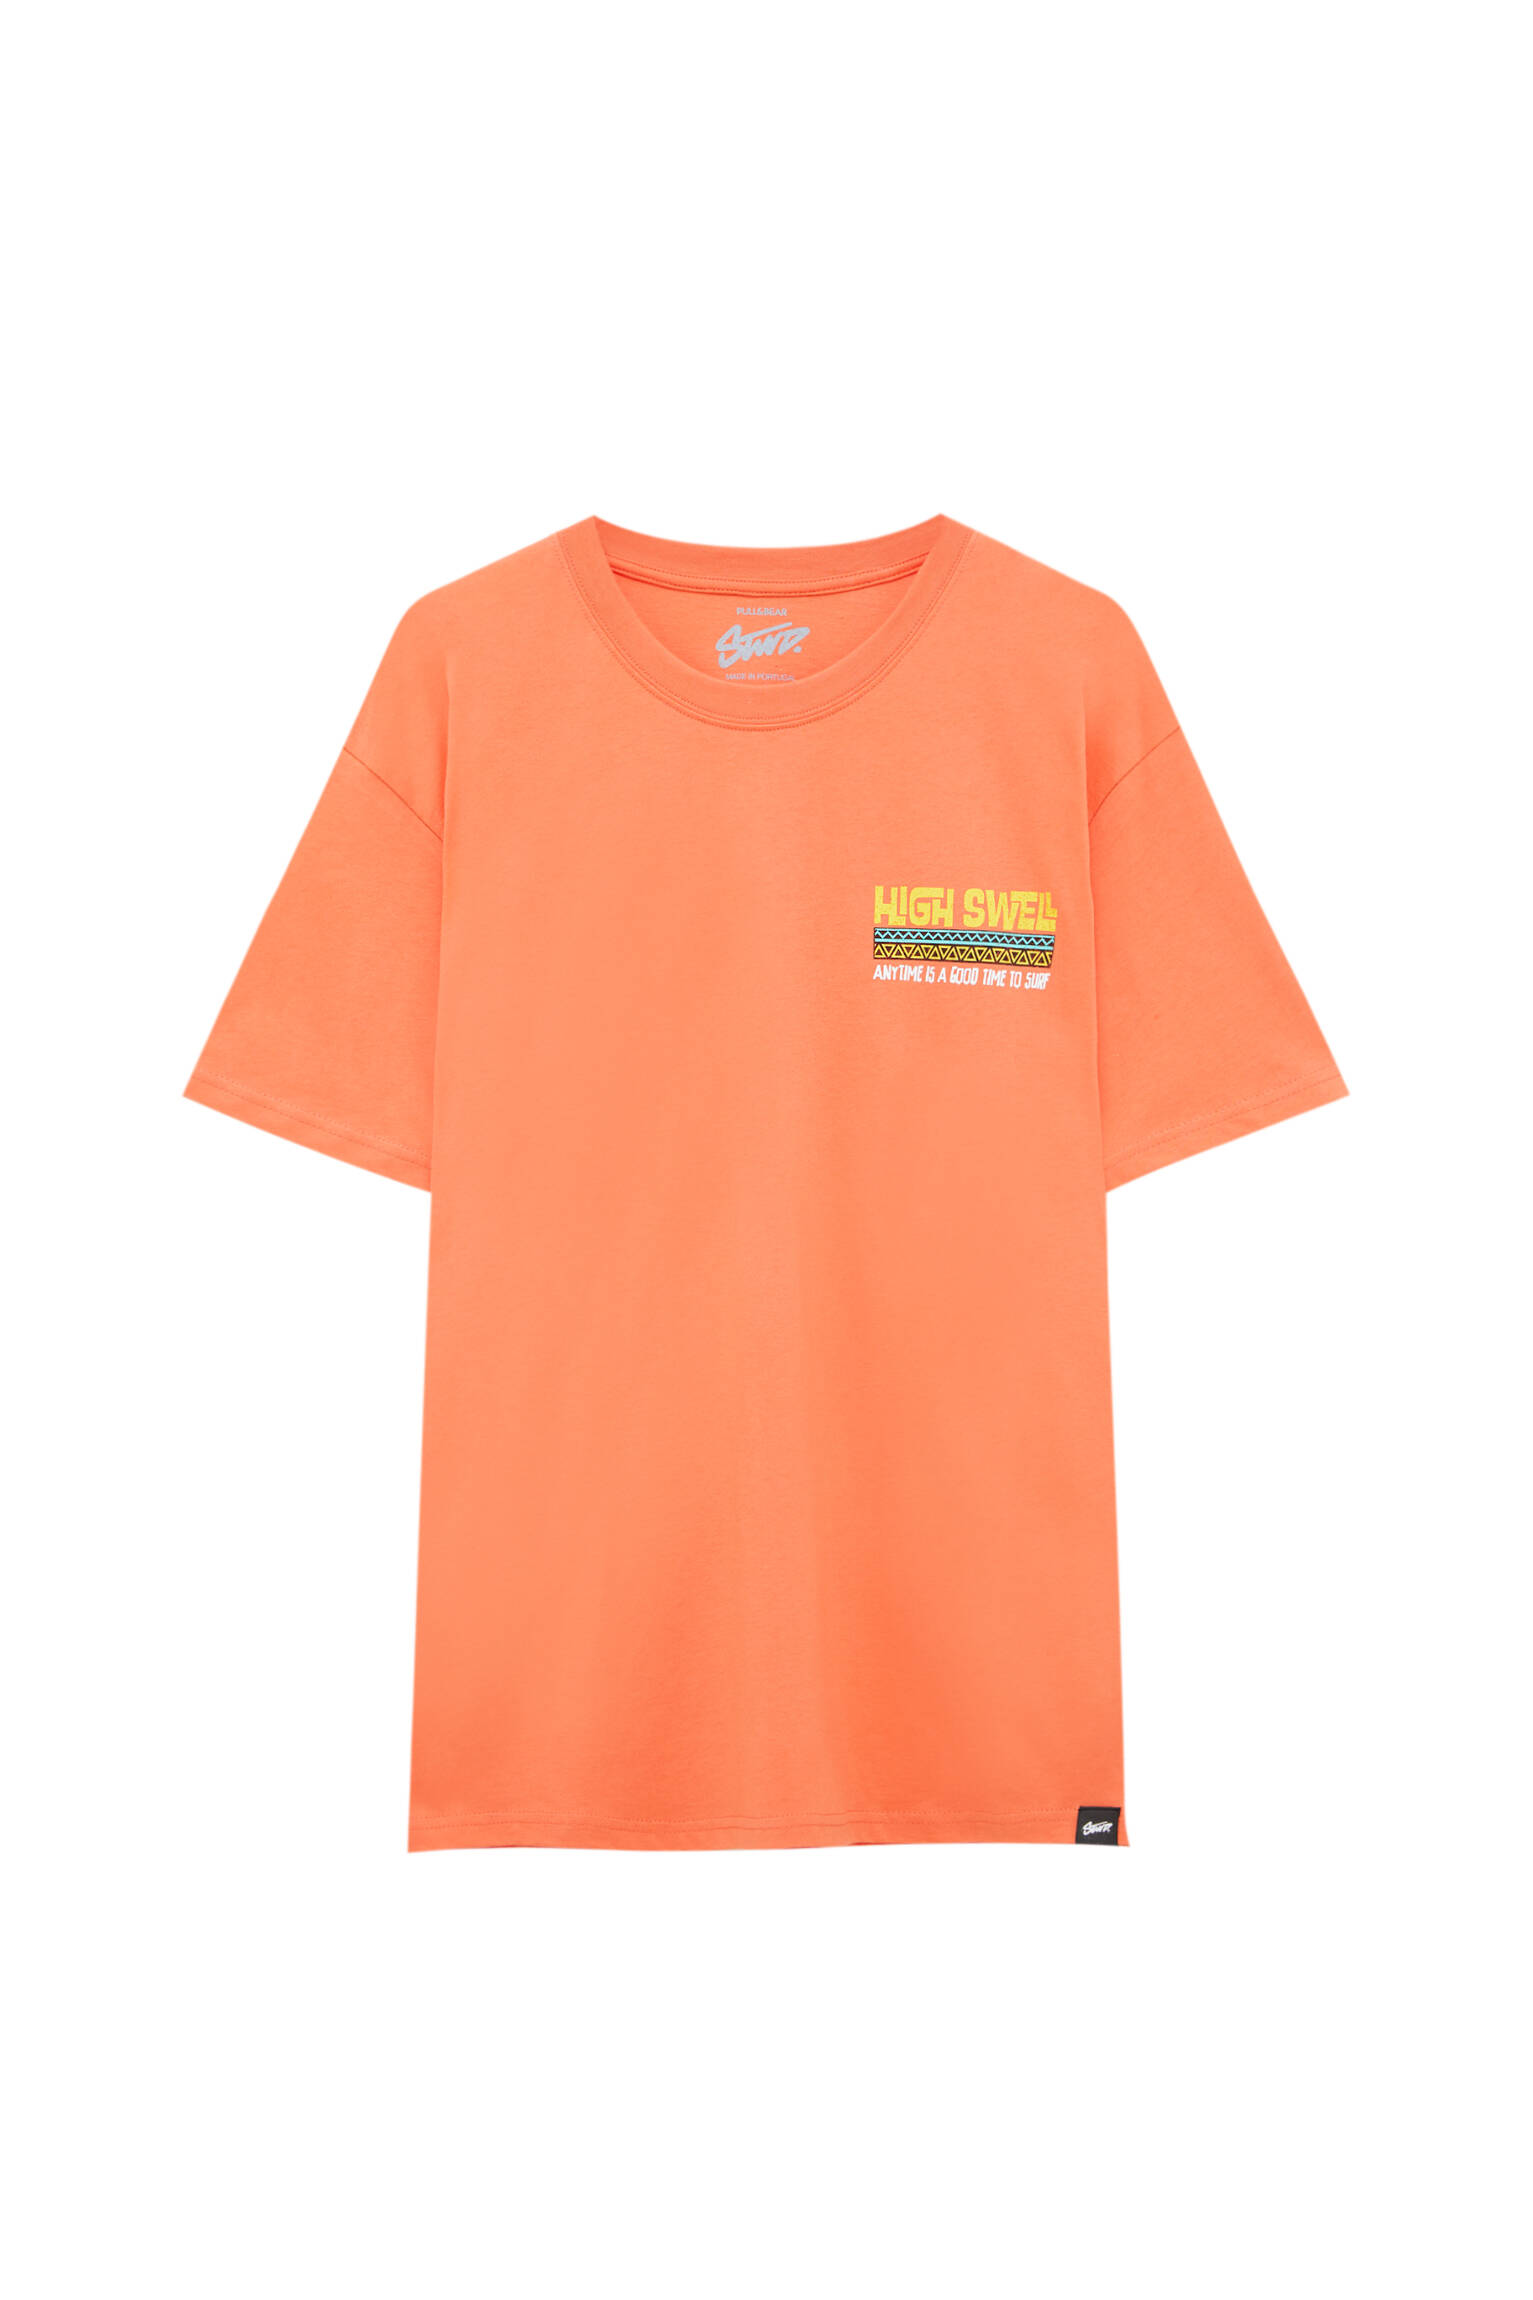 Pull&bear Homme T-shirt Orange En Coton à Manches Courtes Et Col Rond, Avec Illustration Et Inscript